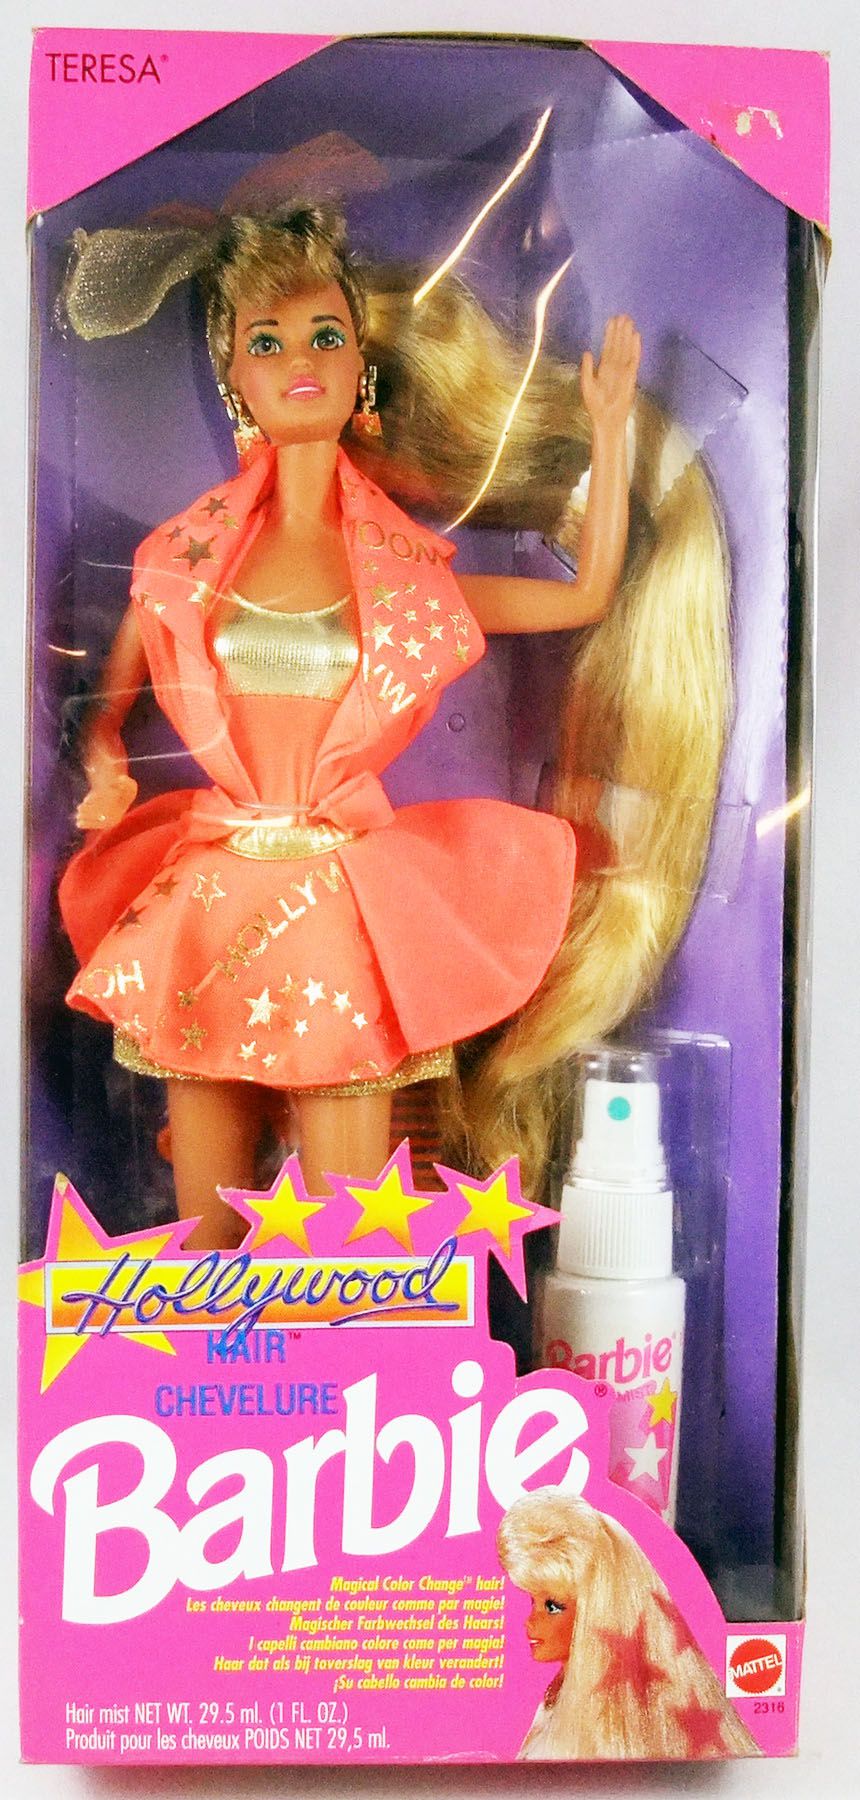 Diverse Ongeëvenaard schroef Barbie Hollywood Hair - Teresa - Mattel 1992 (ref. 2316)